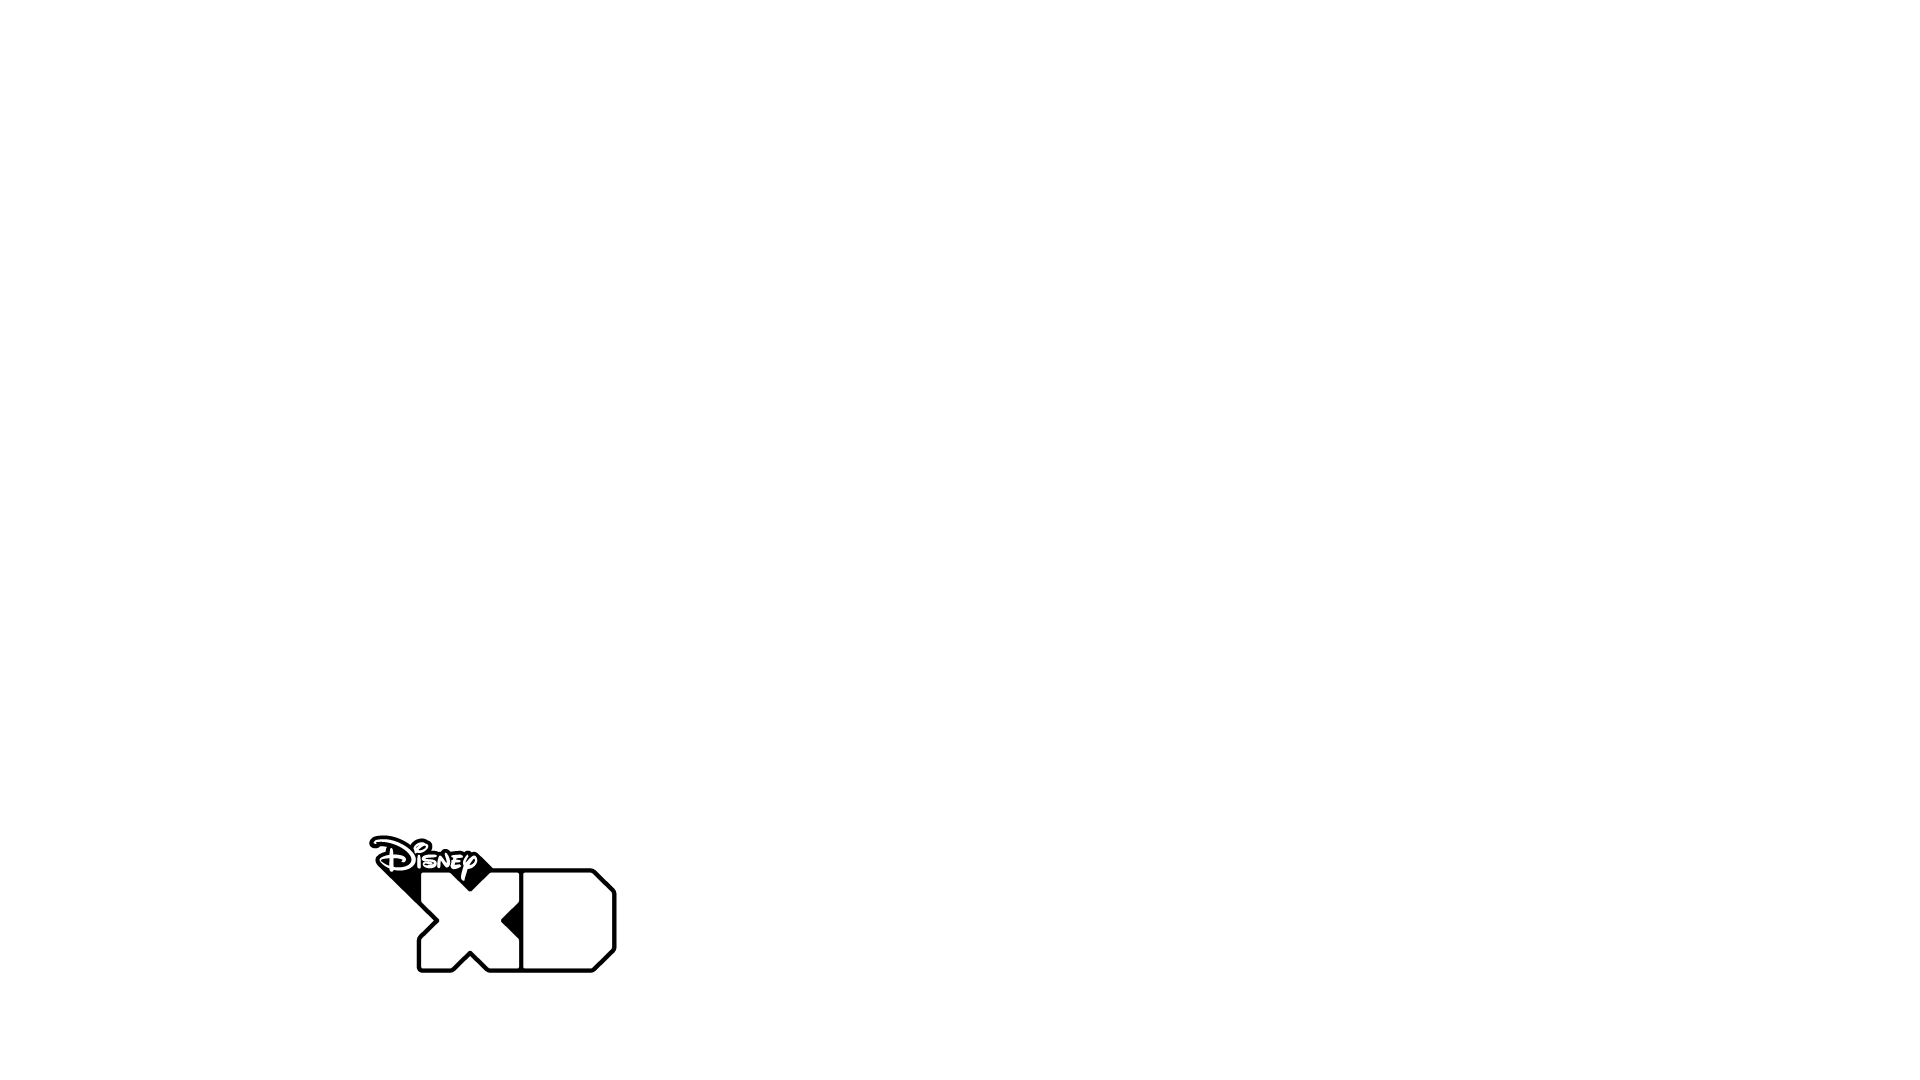 Disney XD Logo - Category:Disney XD | Logopedia | FANDOM powered by Wikia